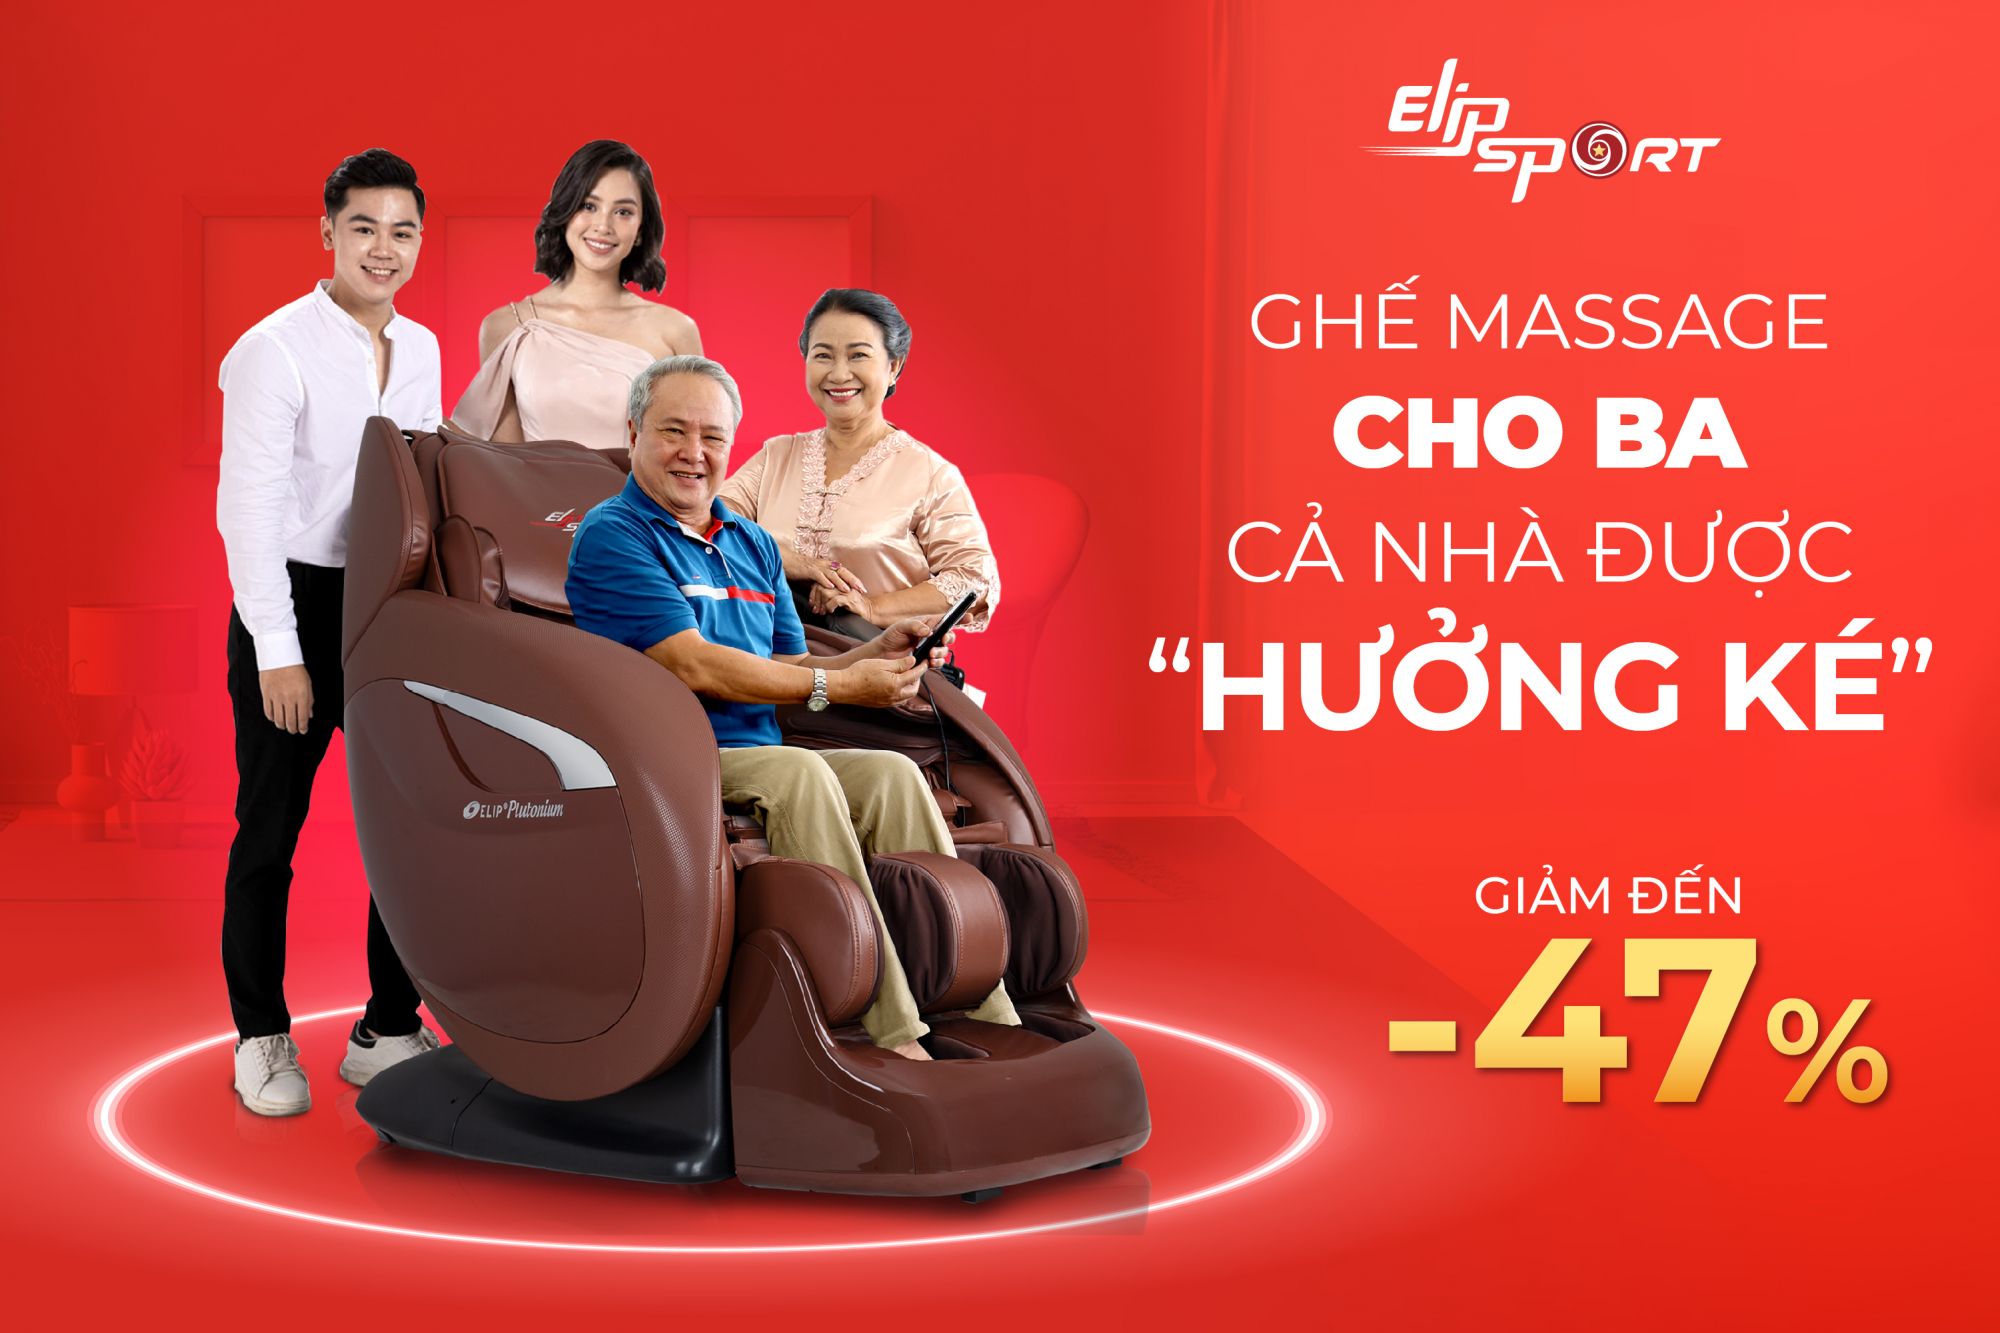 Ghế massage Elipsport sale 12.12